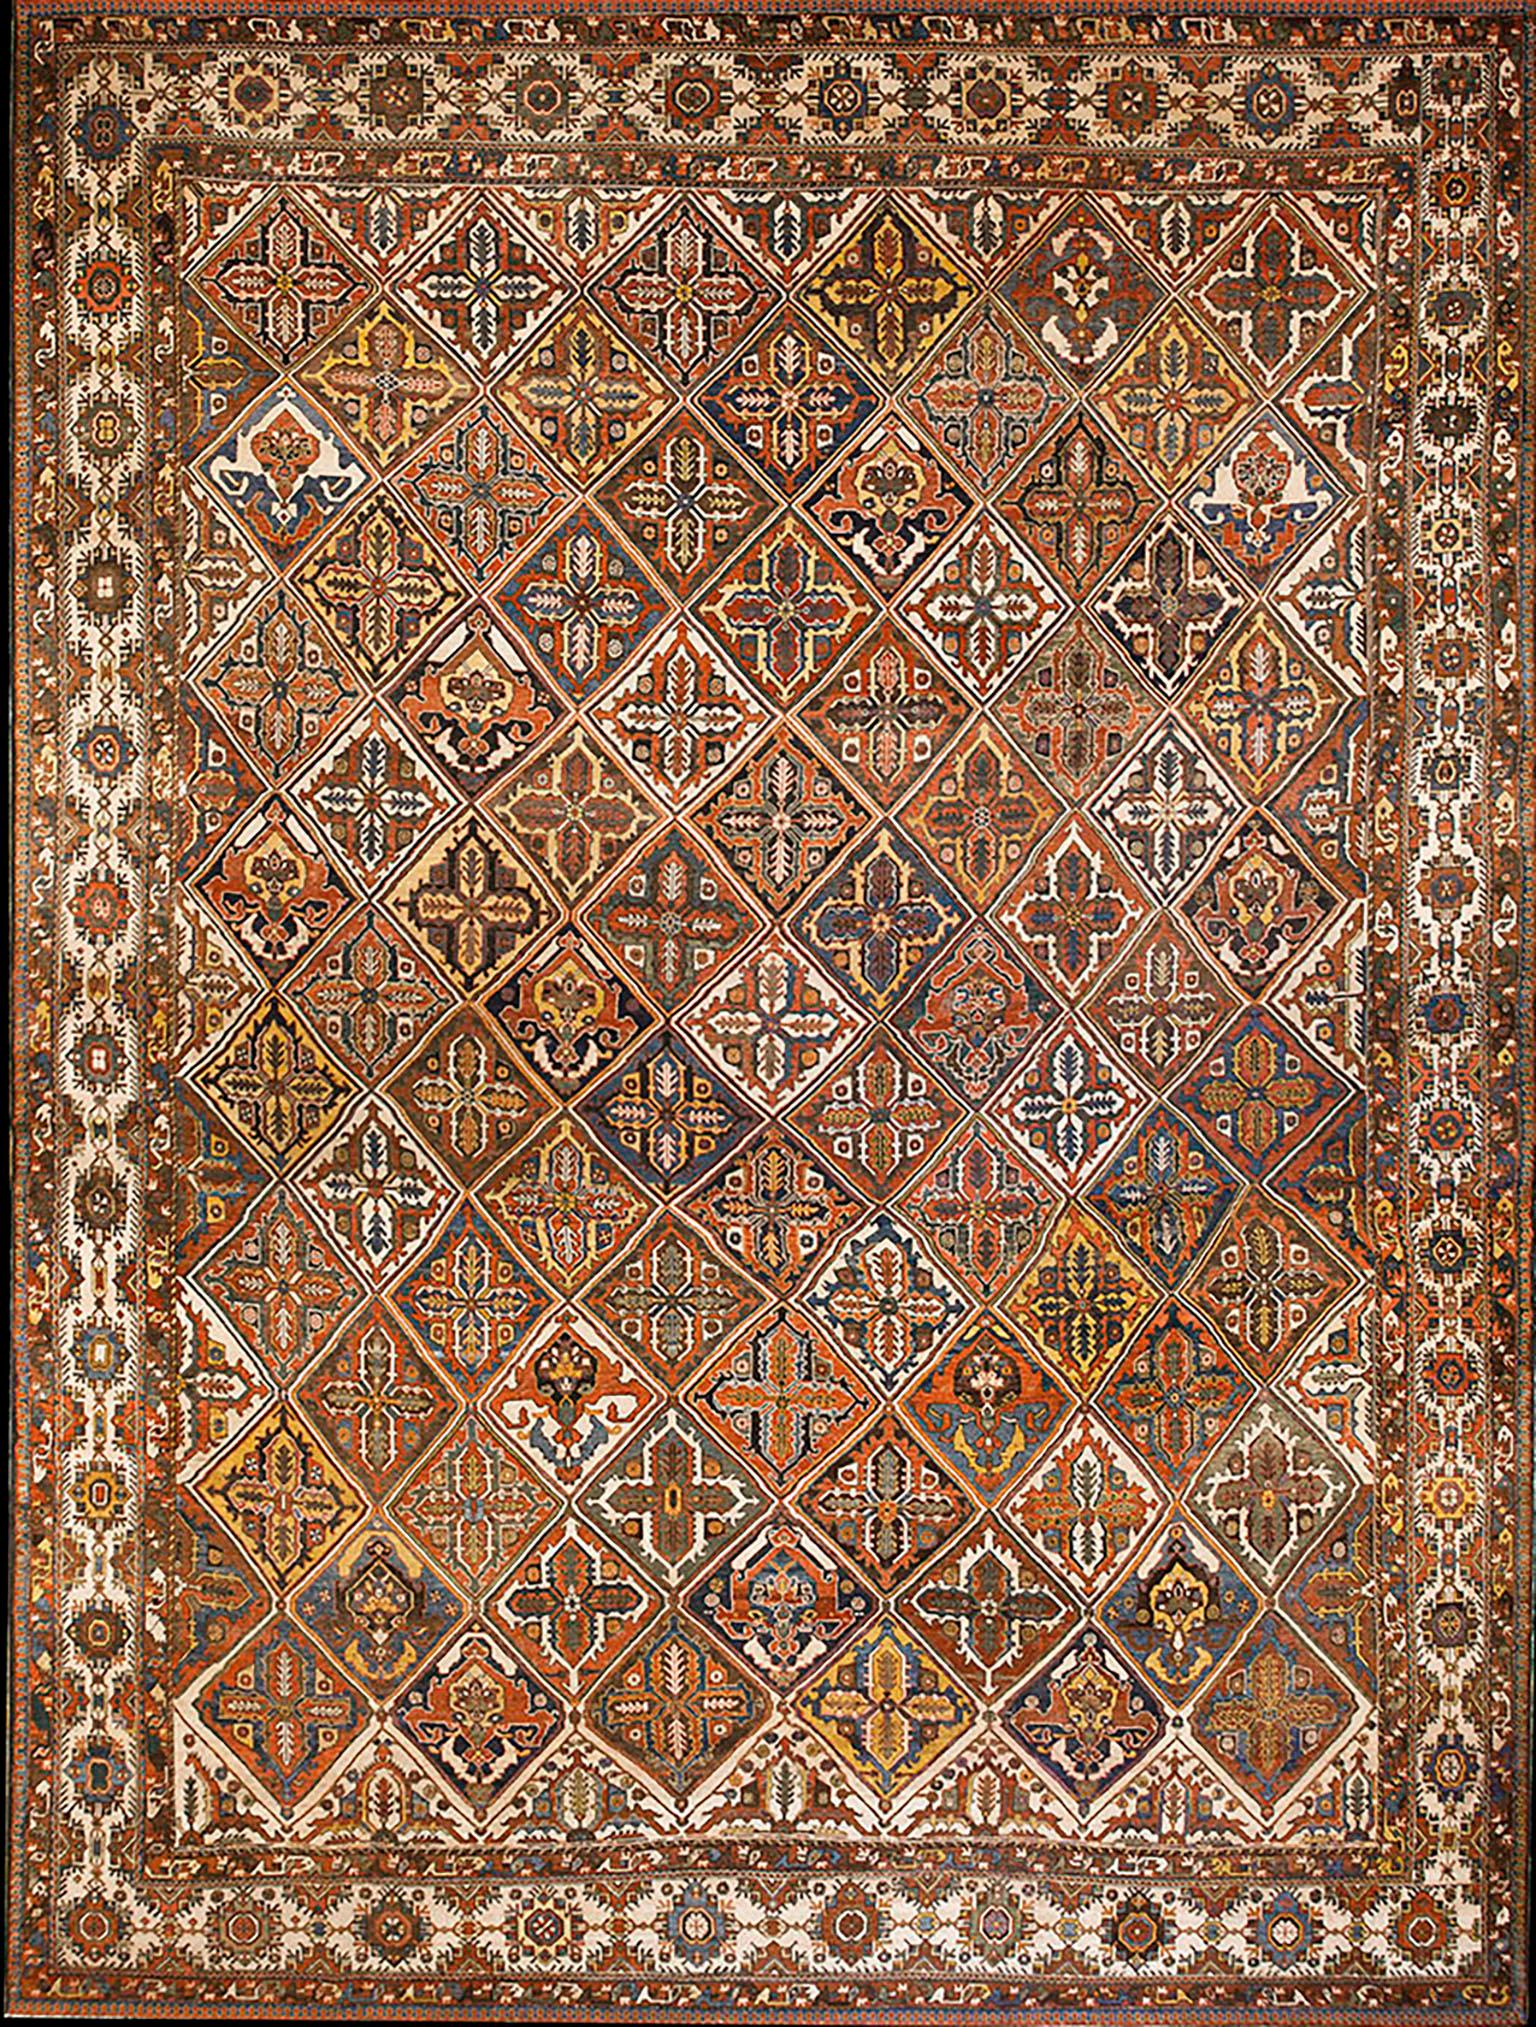 Early 20th Century S. Persian Bakhtiari Carpet ( 16'6" - 21'9" - 502 x 663 )